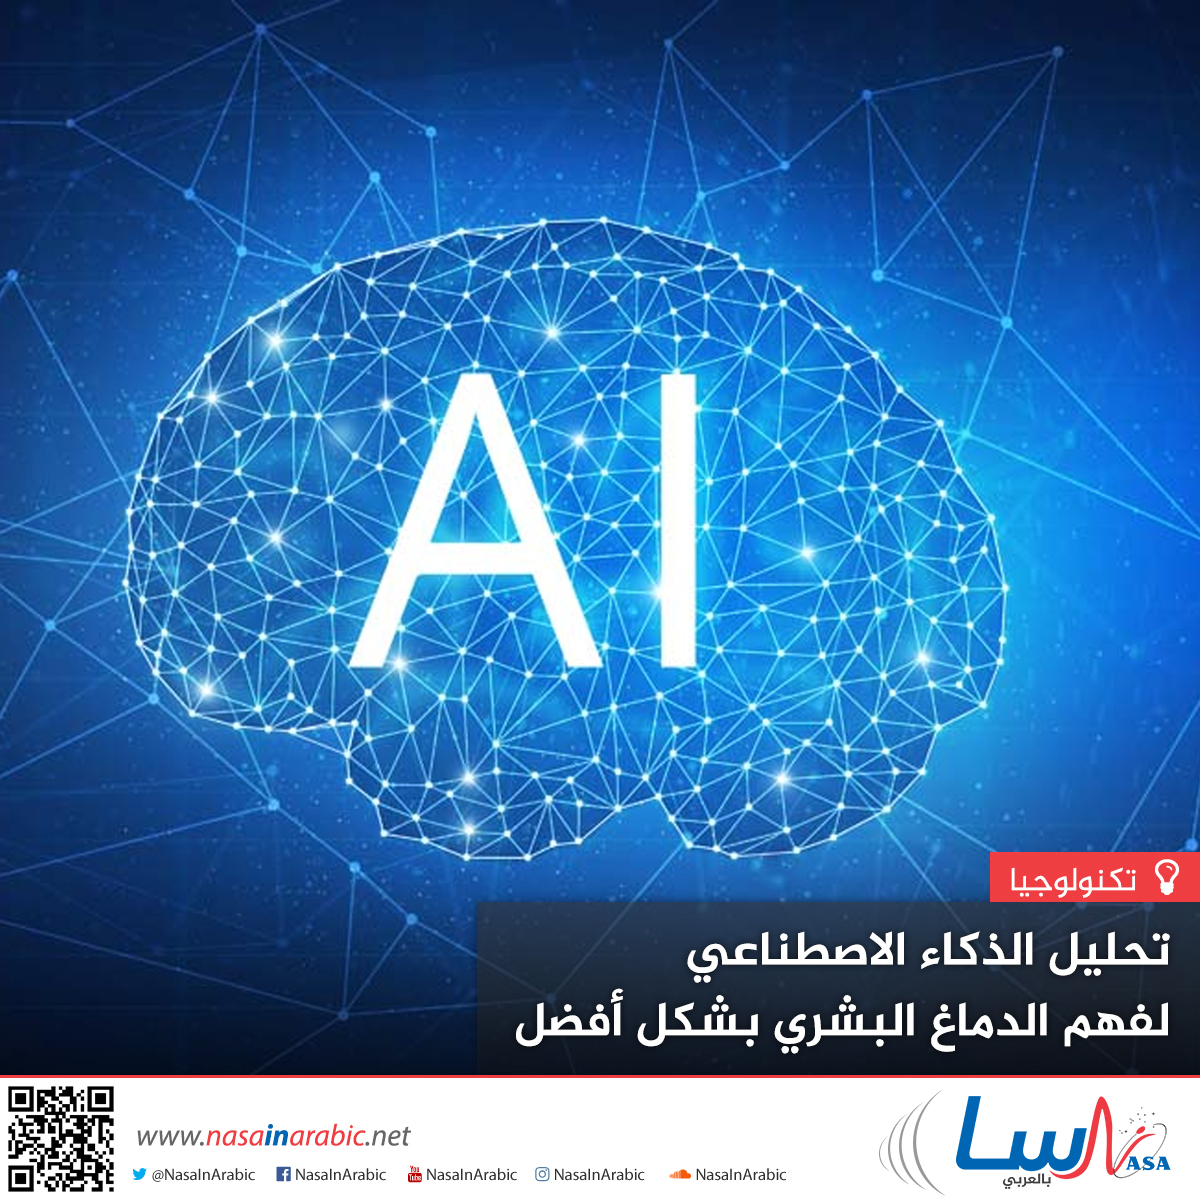 تحليل الذكاء الاصطناعي لفهم الدماغ البشري بشكل أفضل